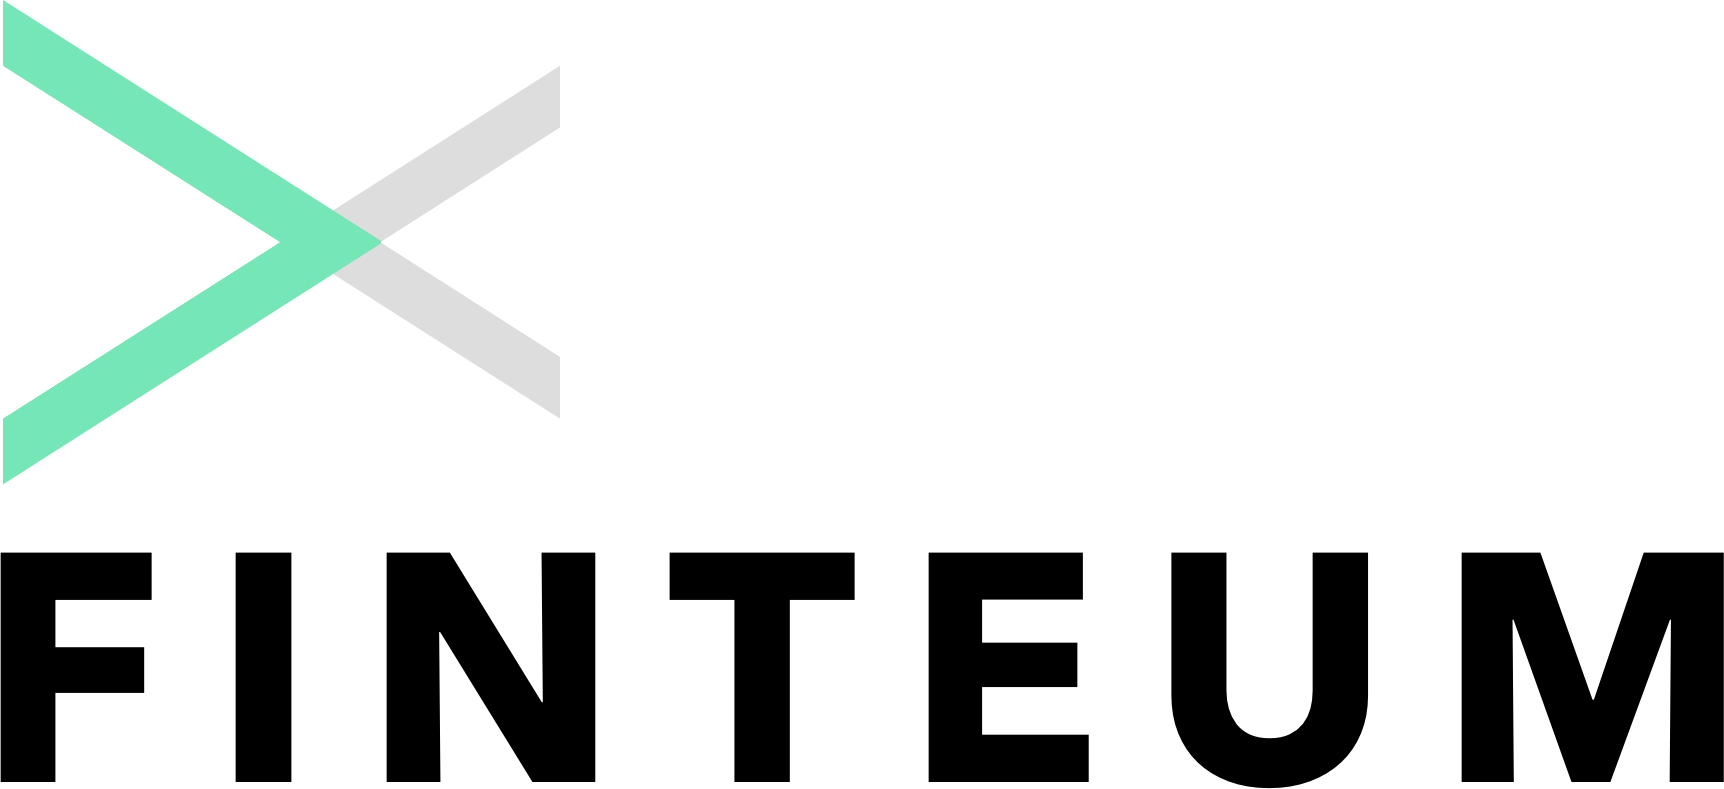 finteum logo.png